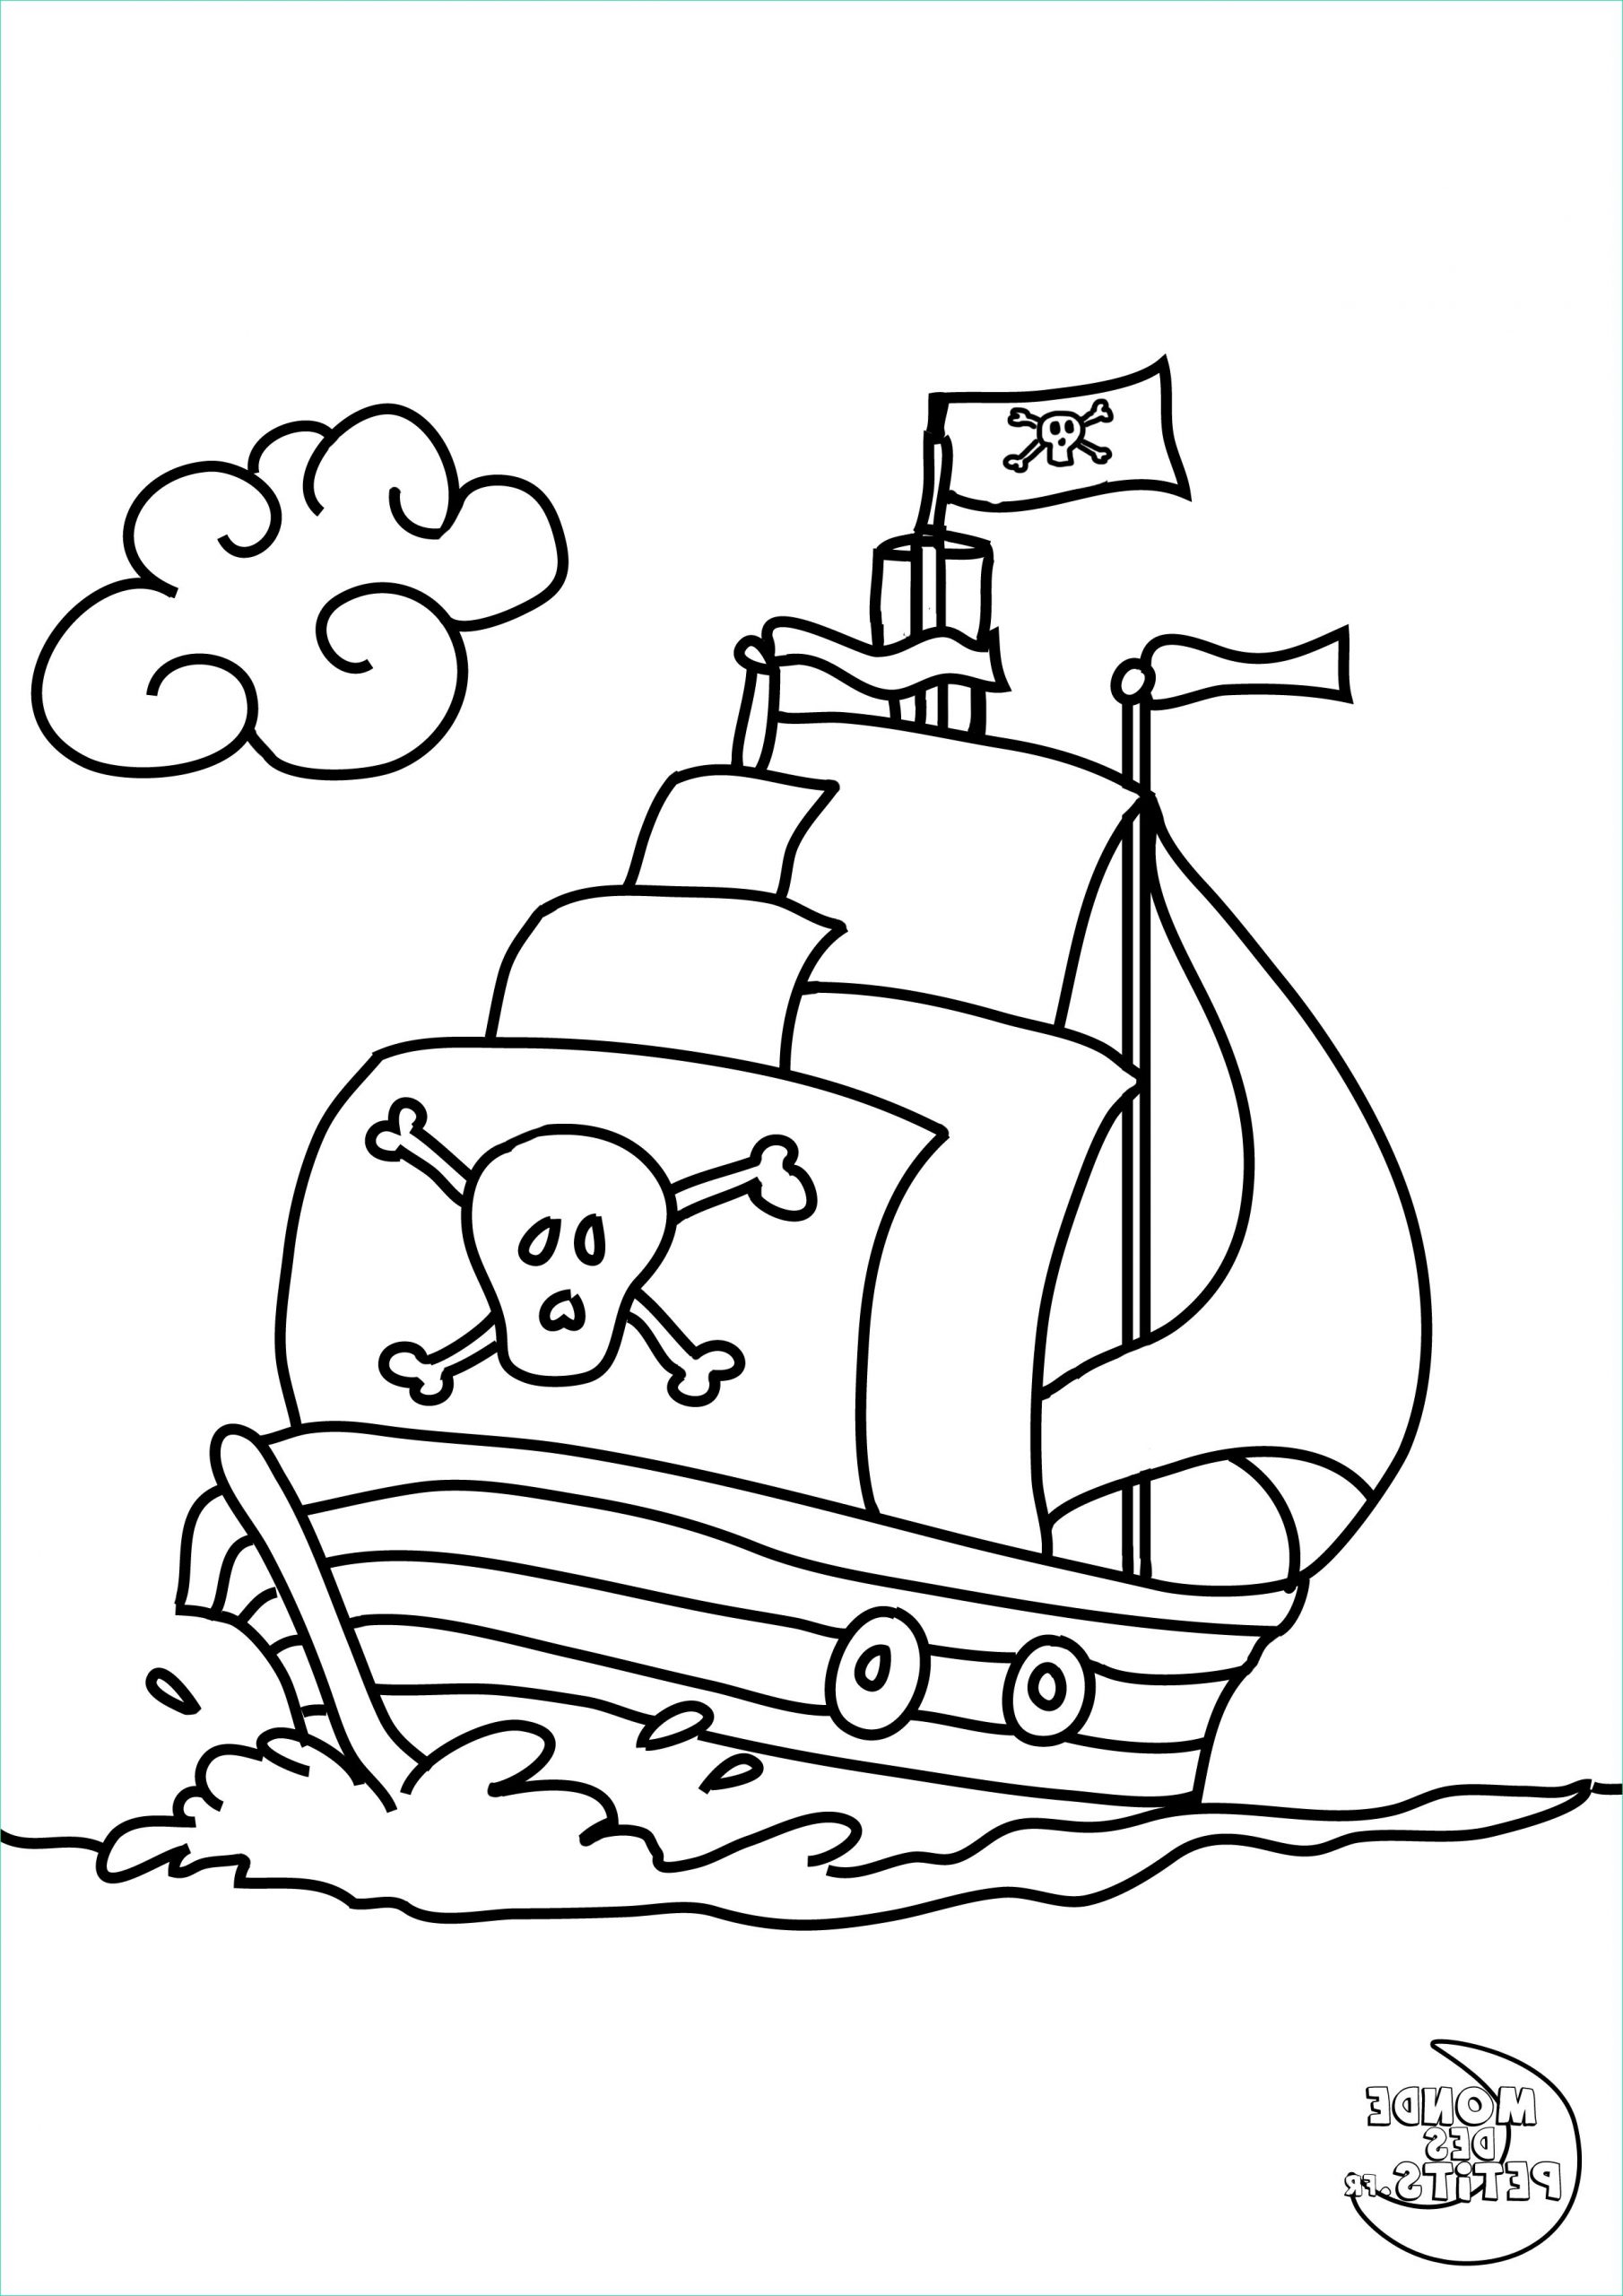 dessin a colorier pirate gratuit